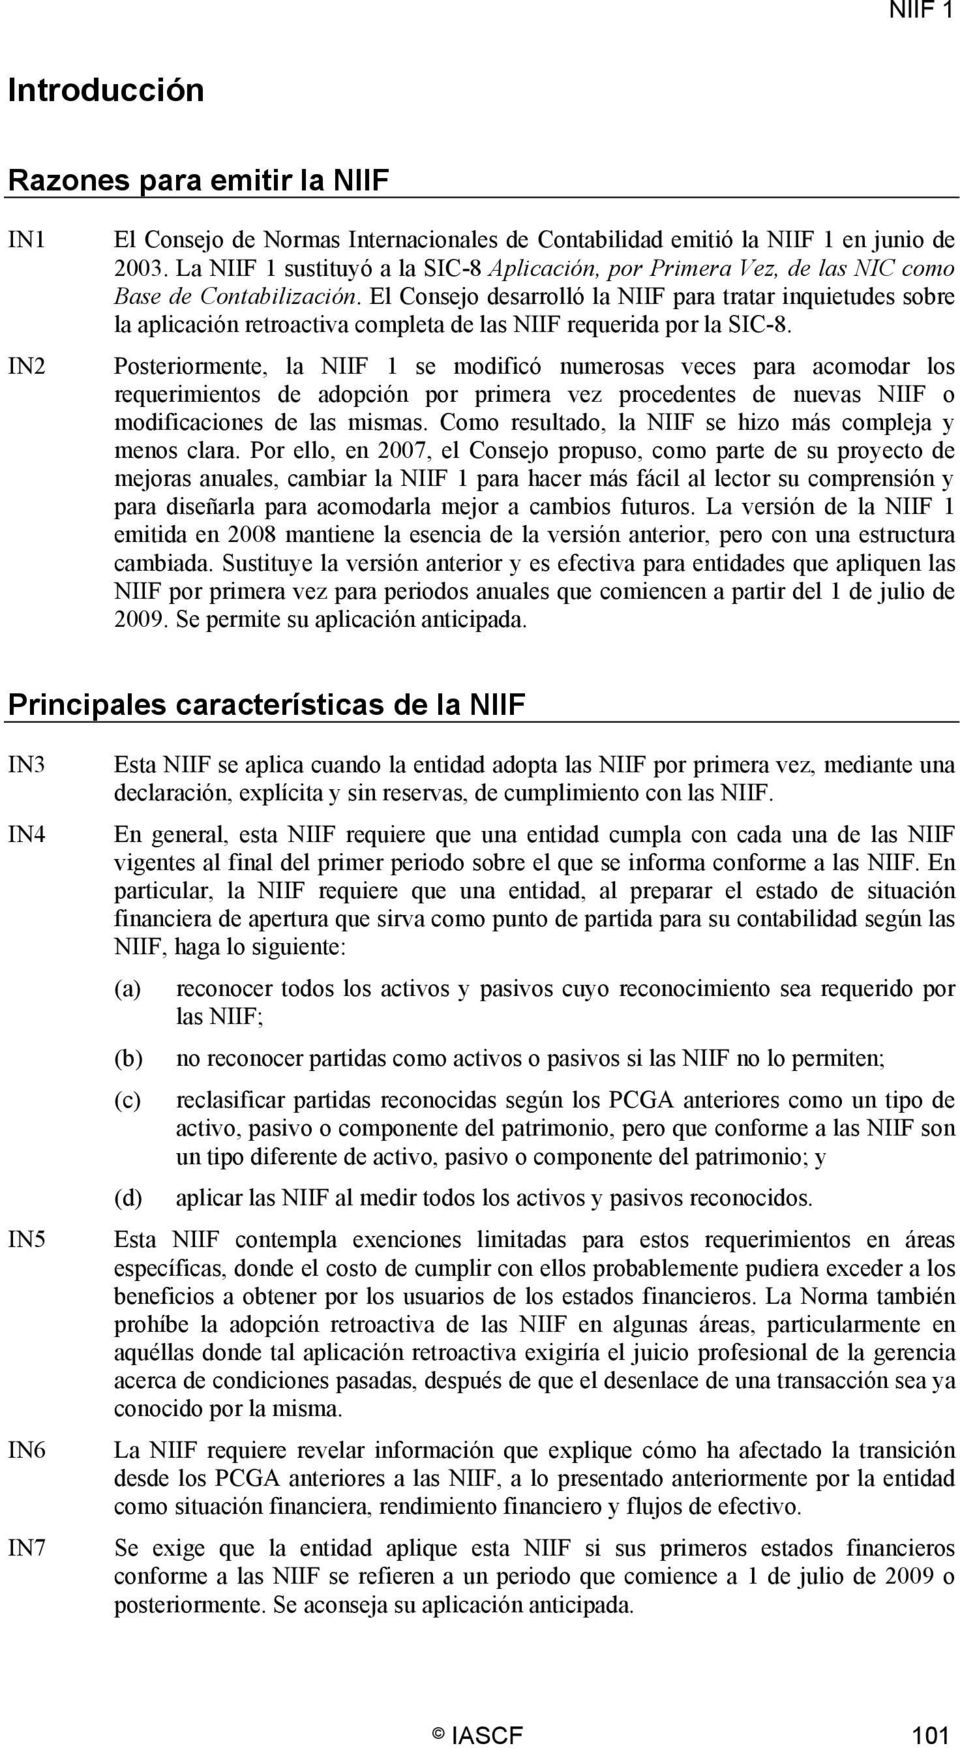 El Consejo desarrolló la NIIF para tratar inquietudes sobre la aplicación retroactiva completa de las NIIF requerida por la SIC-8.